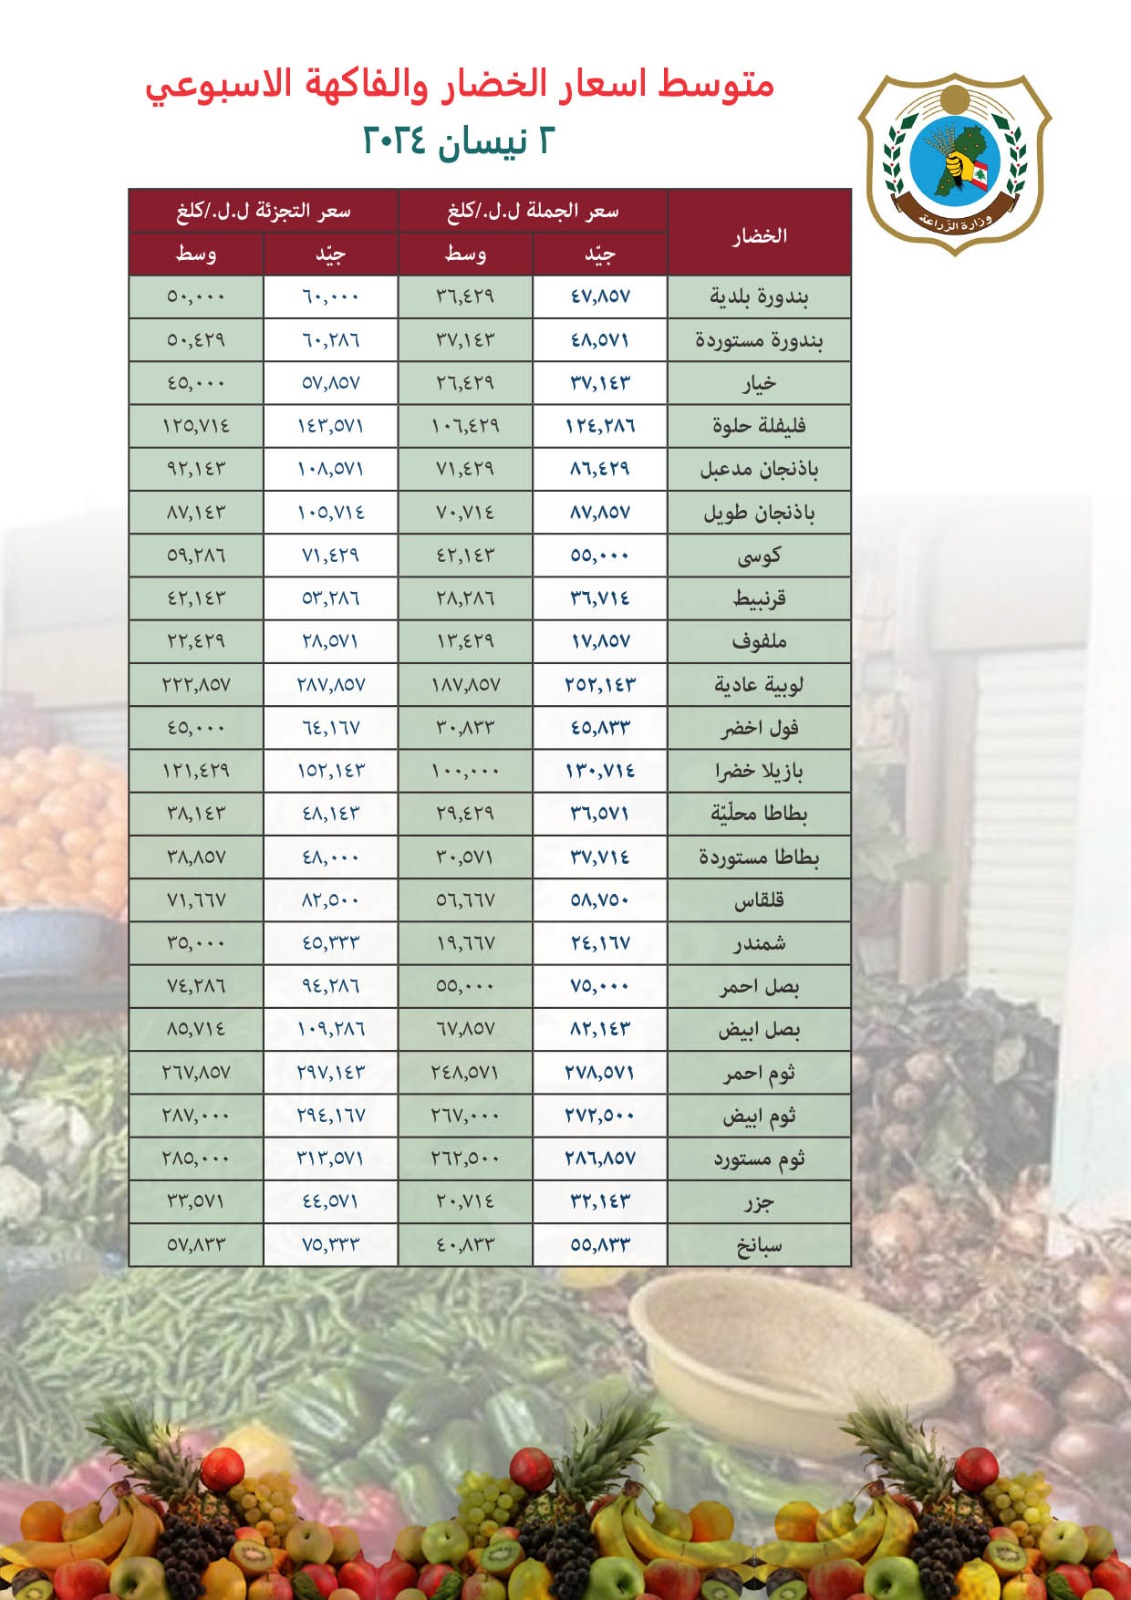 وزارة الزراعة تتابع نشر متوسط أسعار الجملة والتجزئة للحوم والخضر والفاكهة